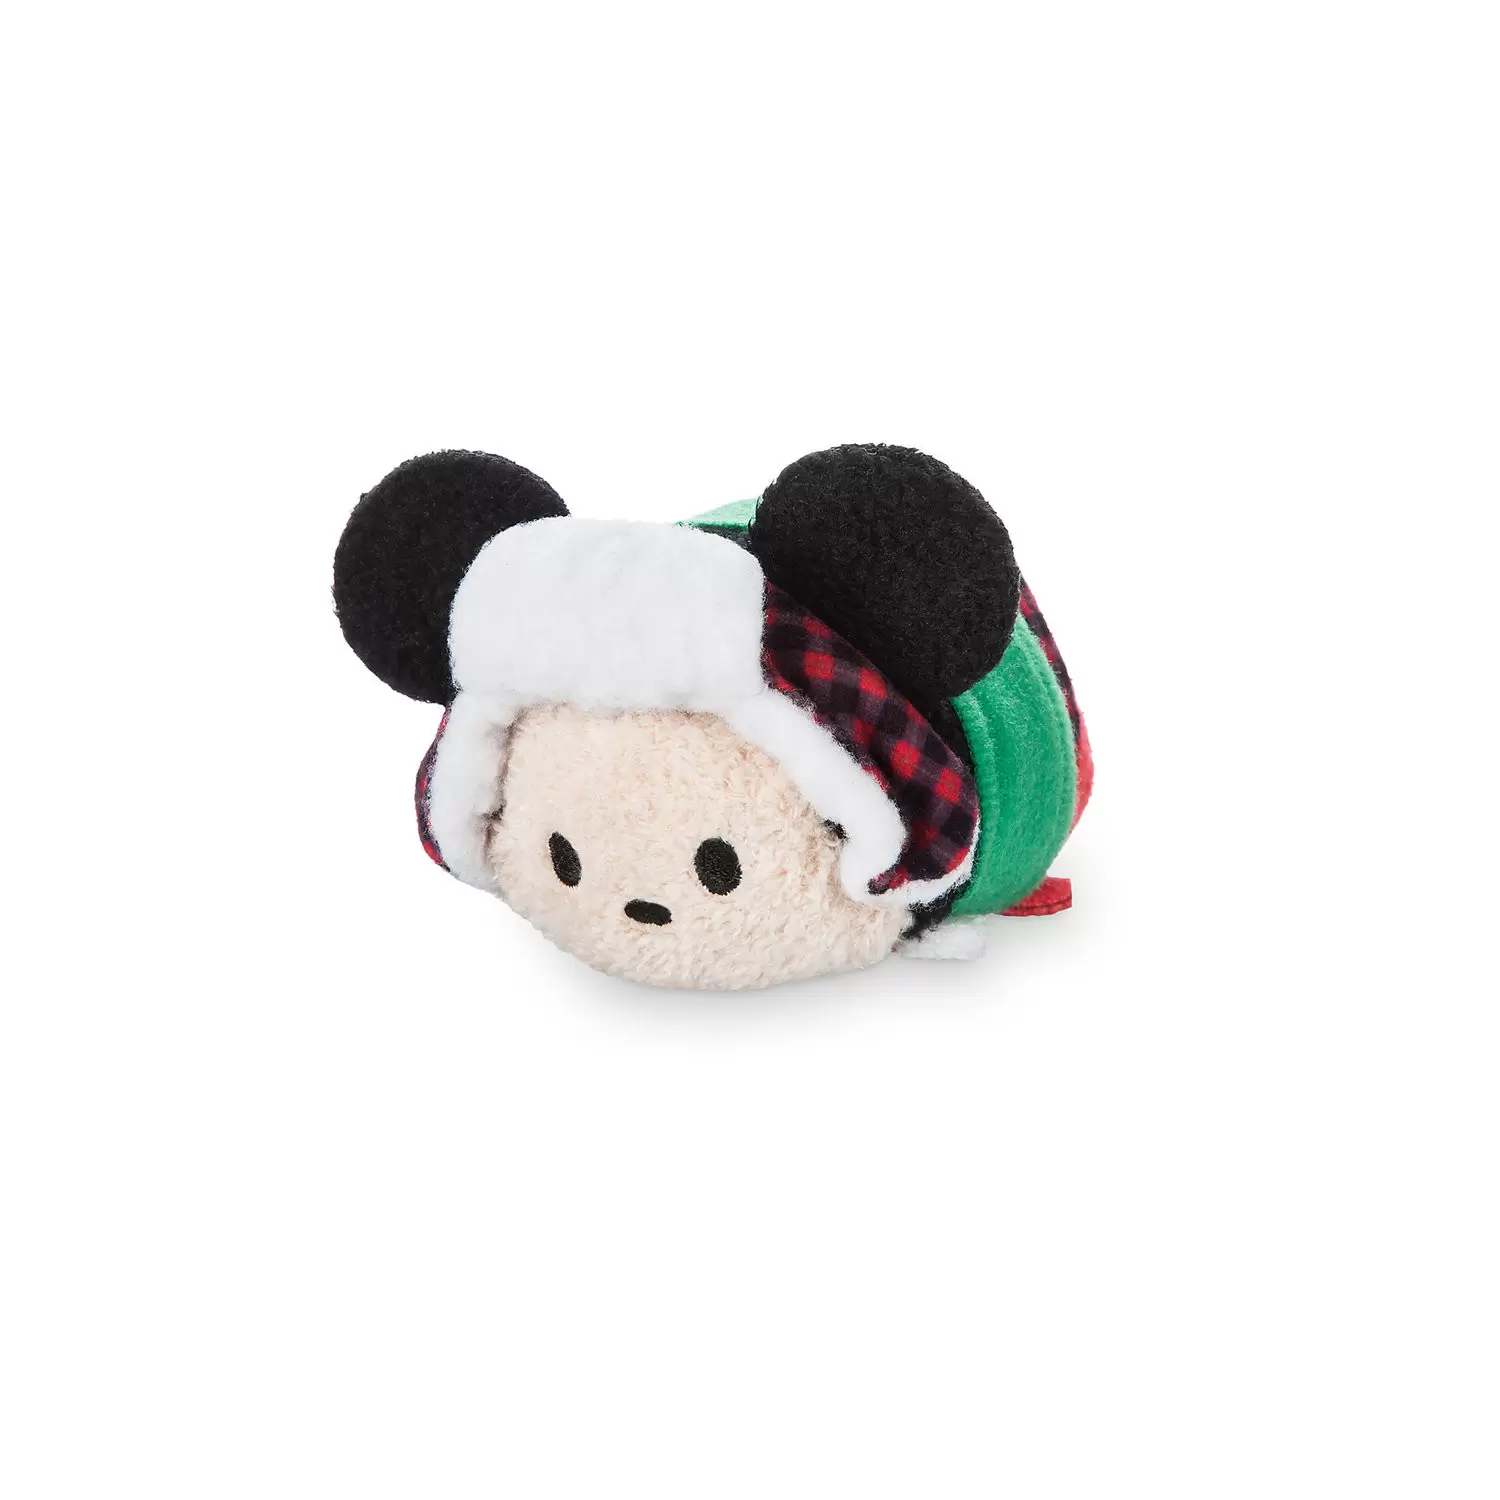 Mini Tsum Tsum Plush - Mickey Christmas Holiday